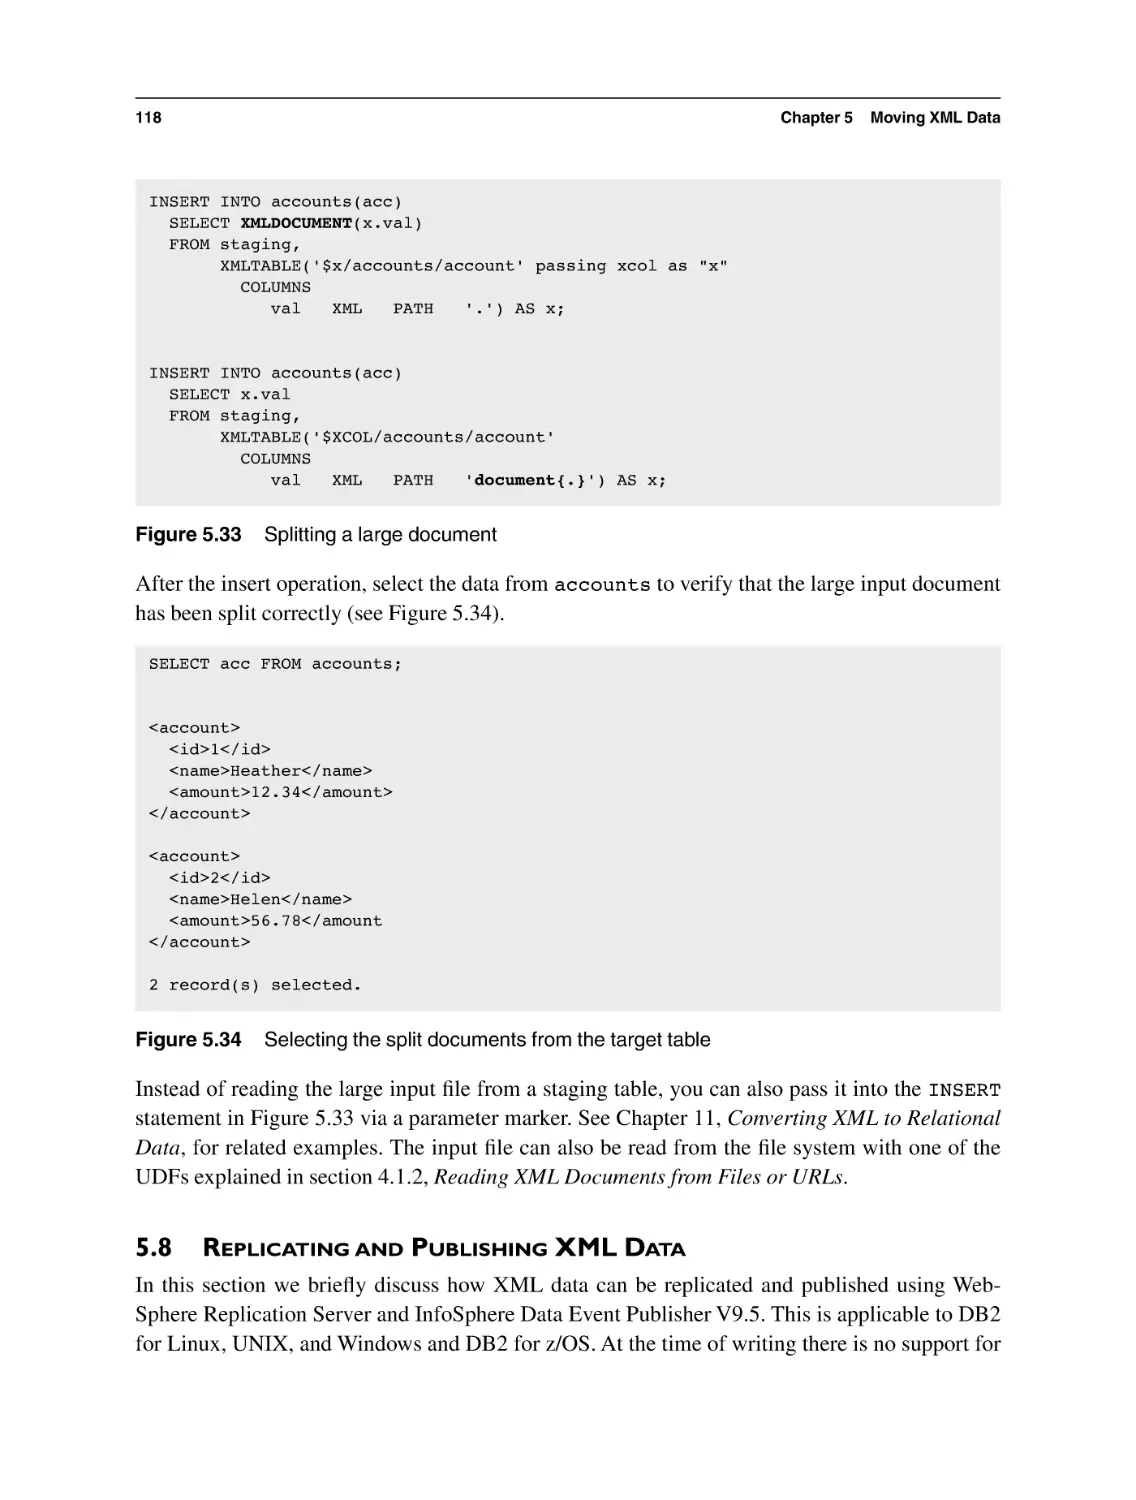 5.8 Replicating and Publishing XML Data